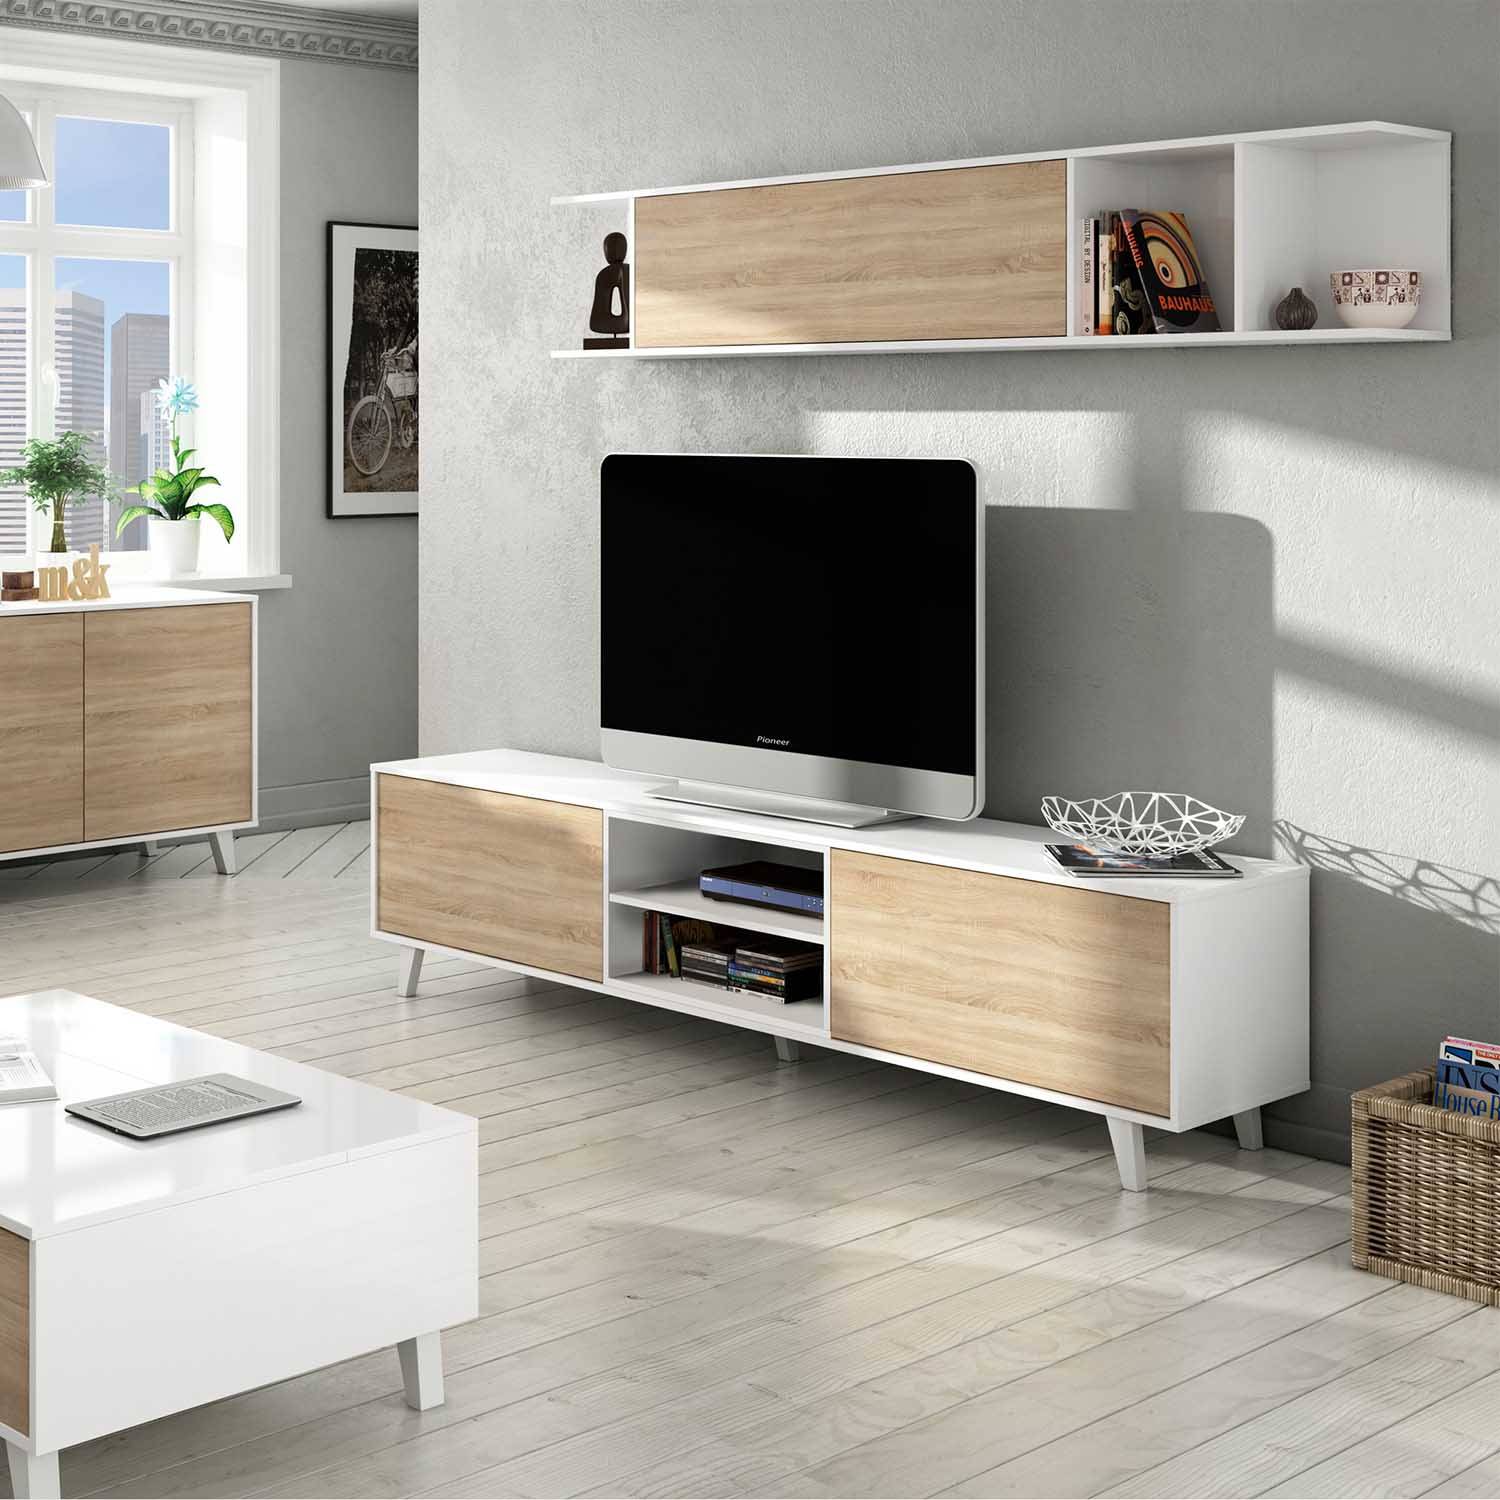 Mueble TV de Dm lacado y metal blanco mate combinado con roble natural